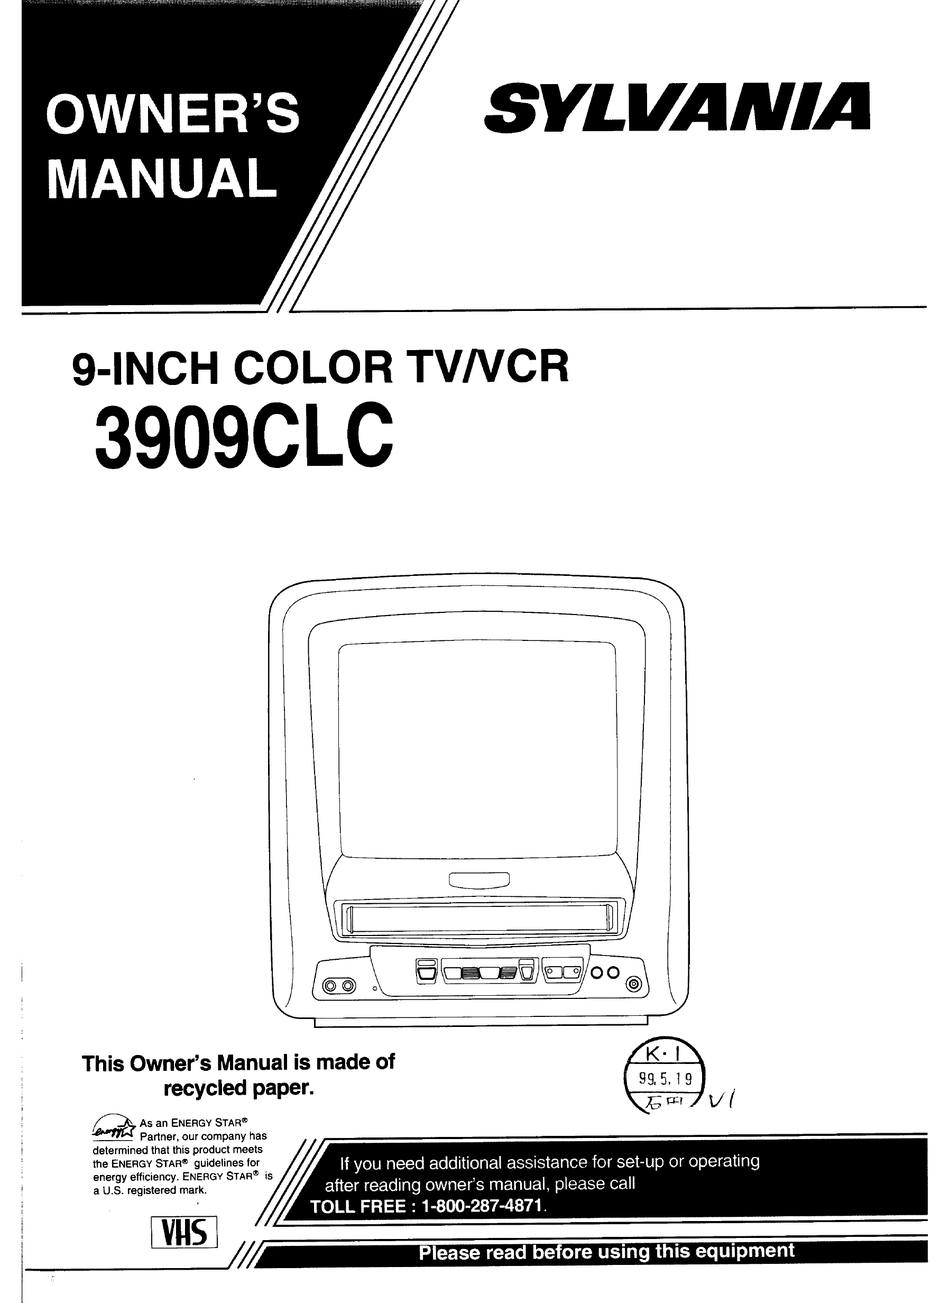 SYLVANIA 3909CLC OWNER'S MANUAL Pdf Download | ManualsLib